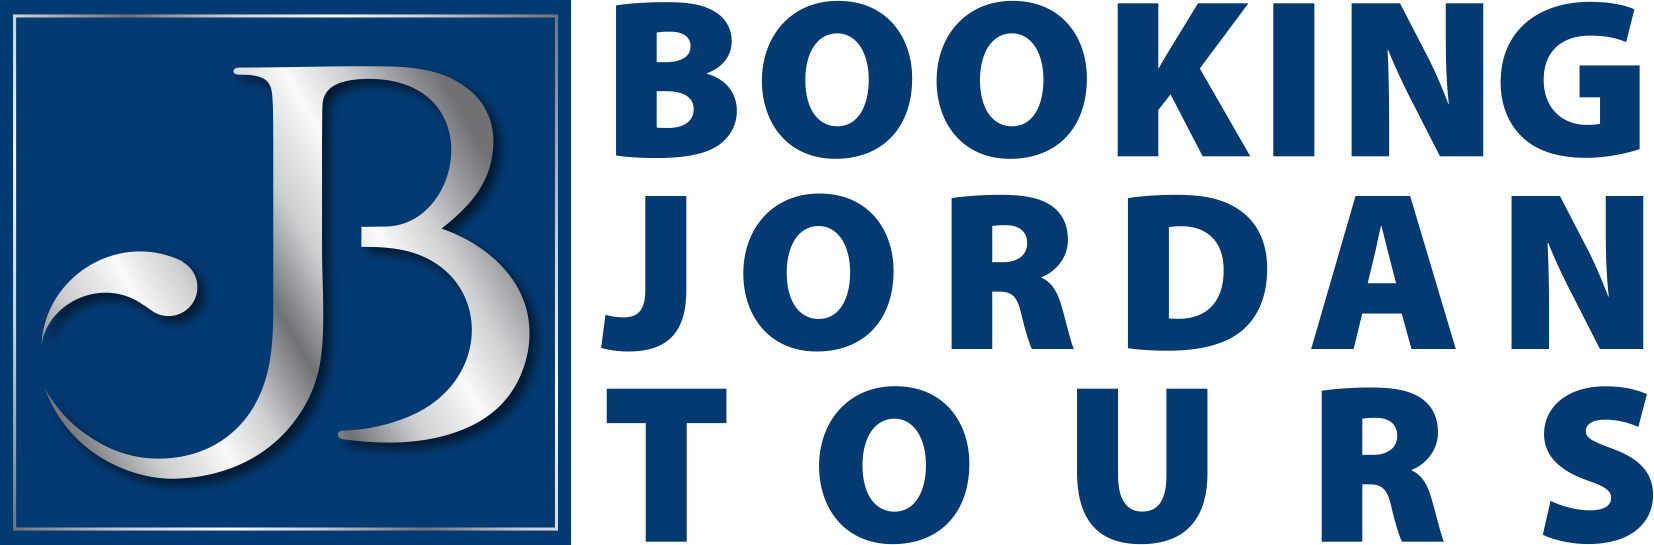 Booking Jordan Tours Logo